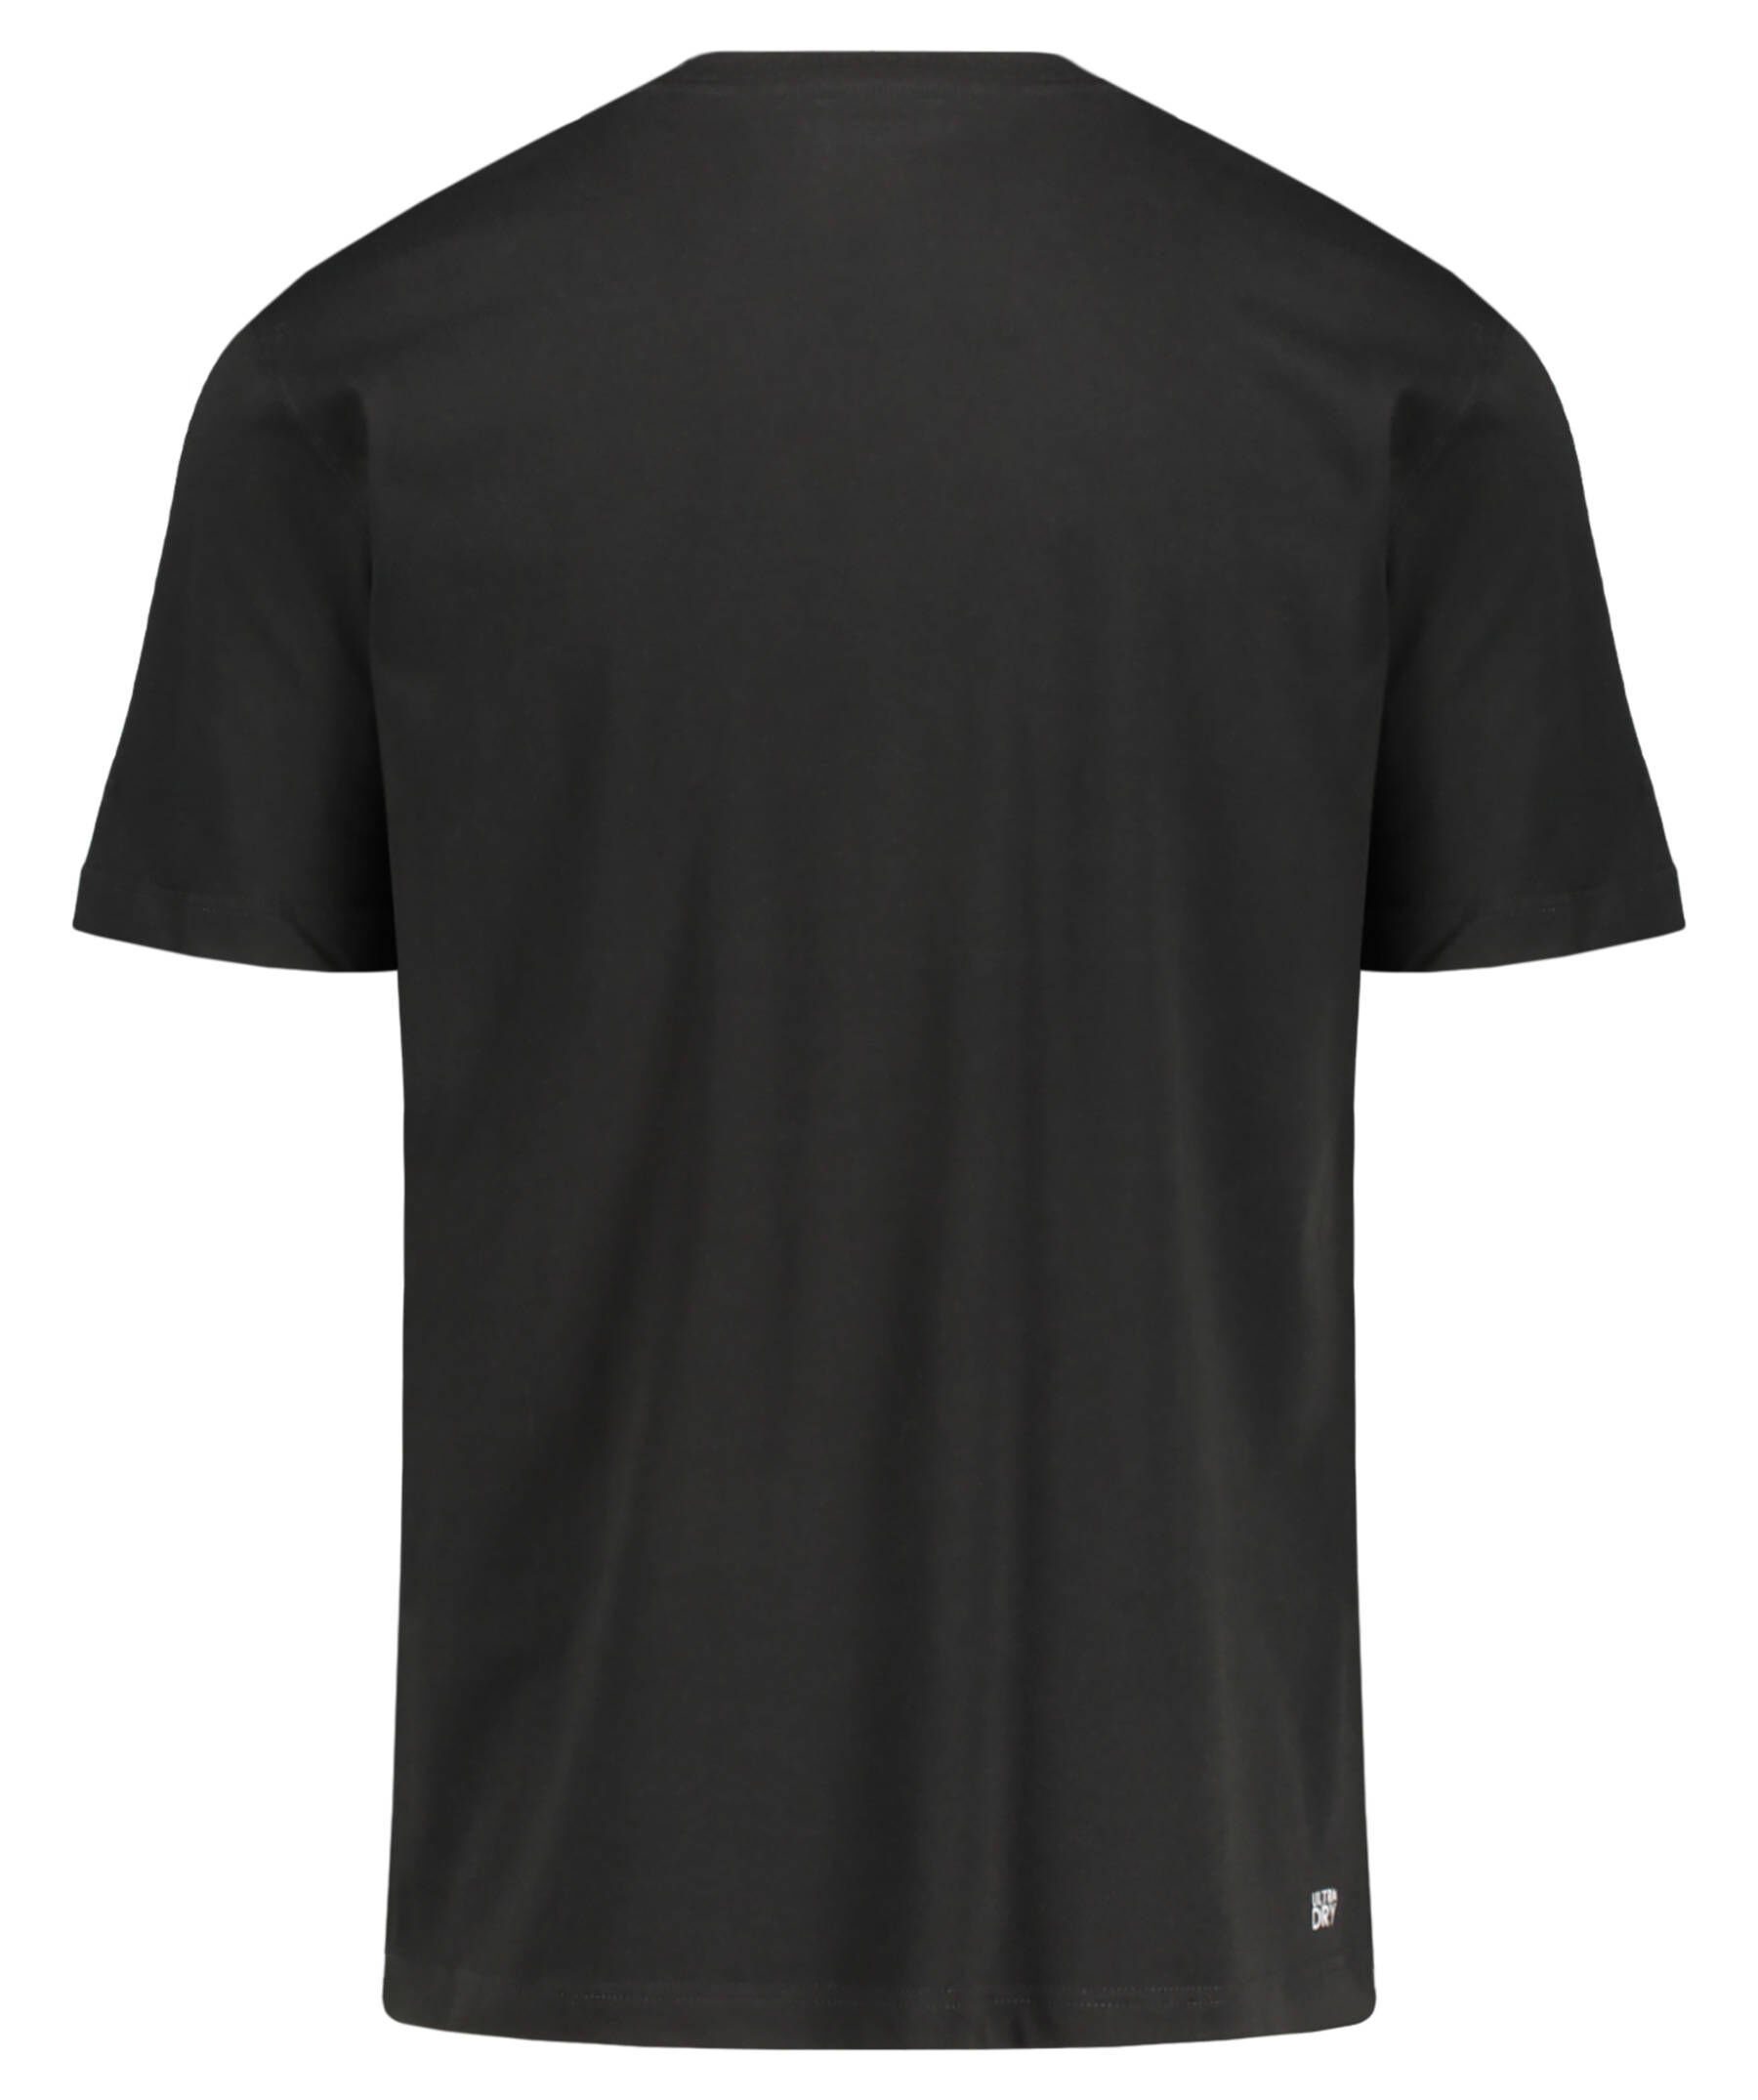 Tennisshirt TEE-SHIRT schwarz Lacoste Tennisshirt (200) Herren Sport